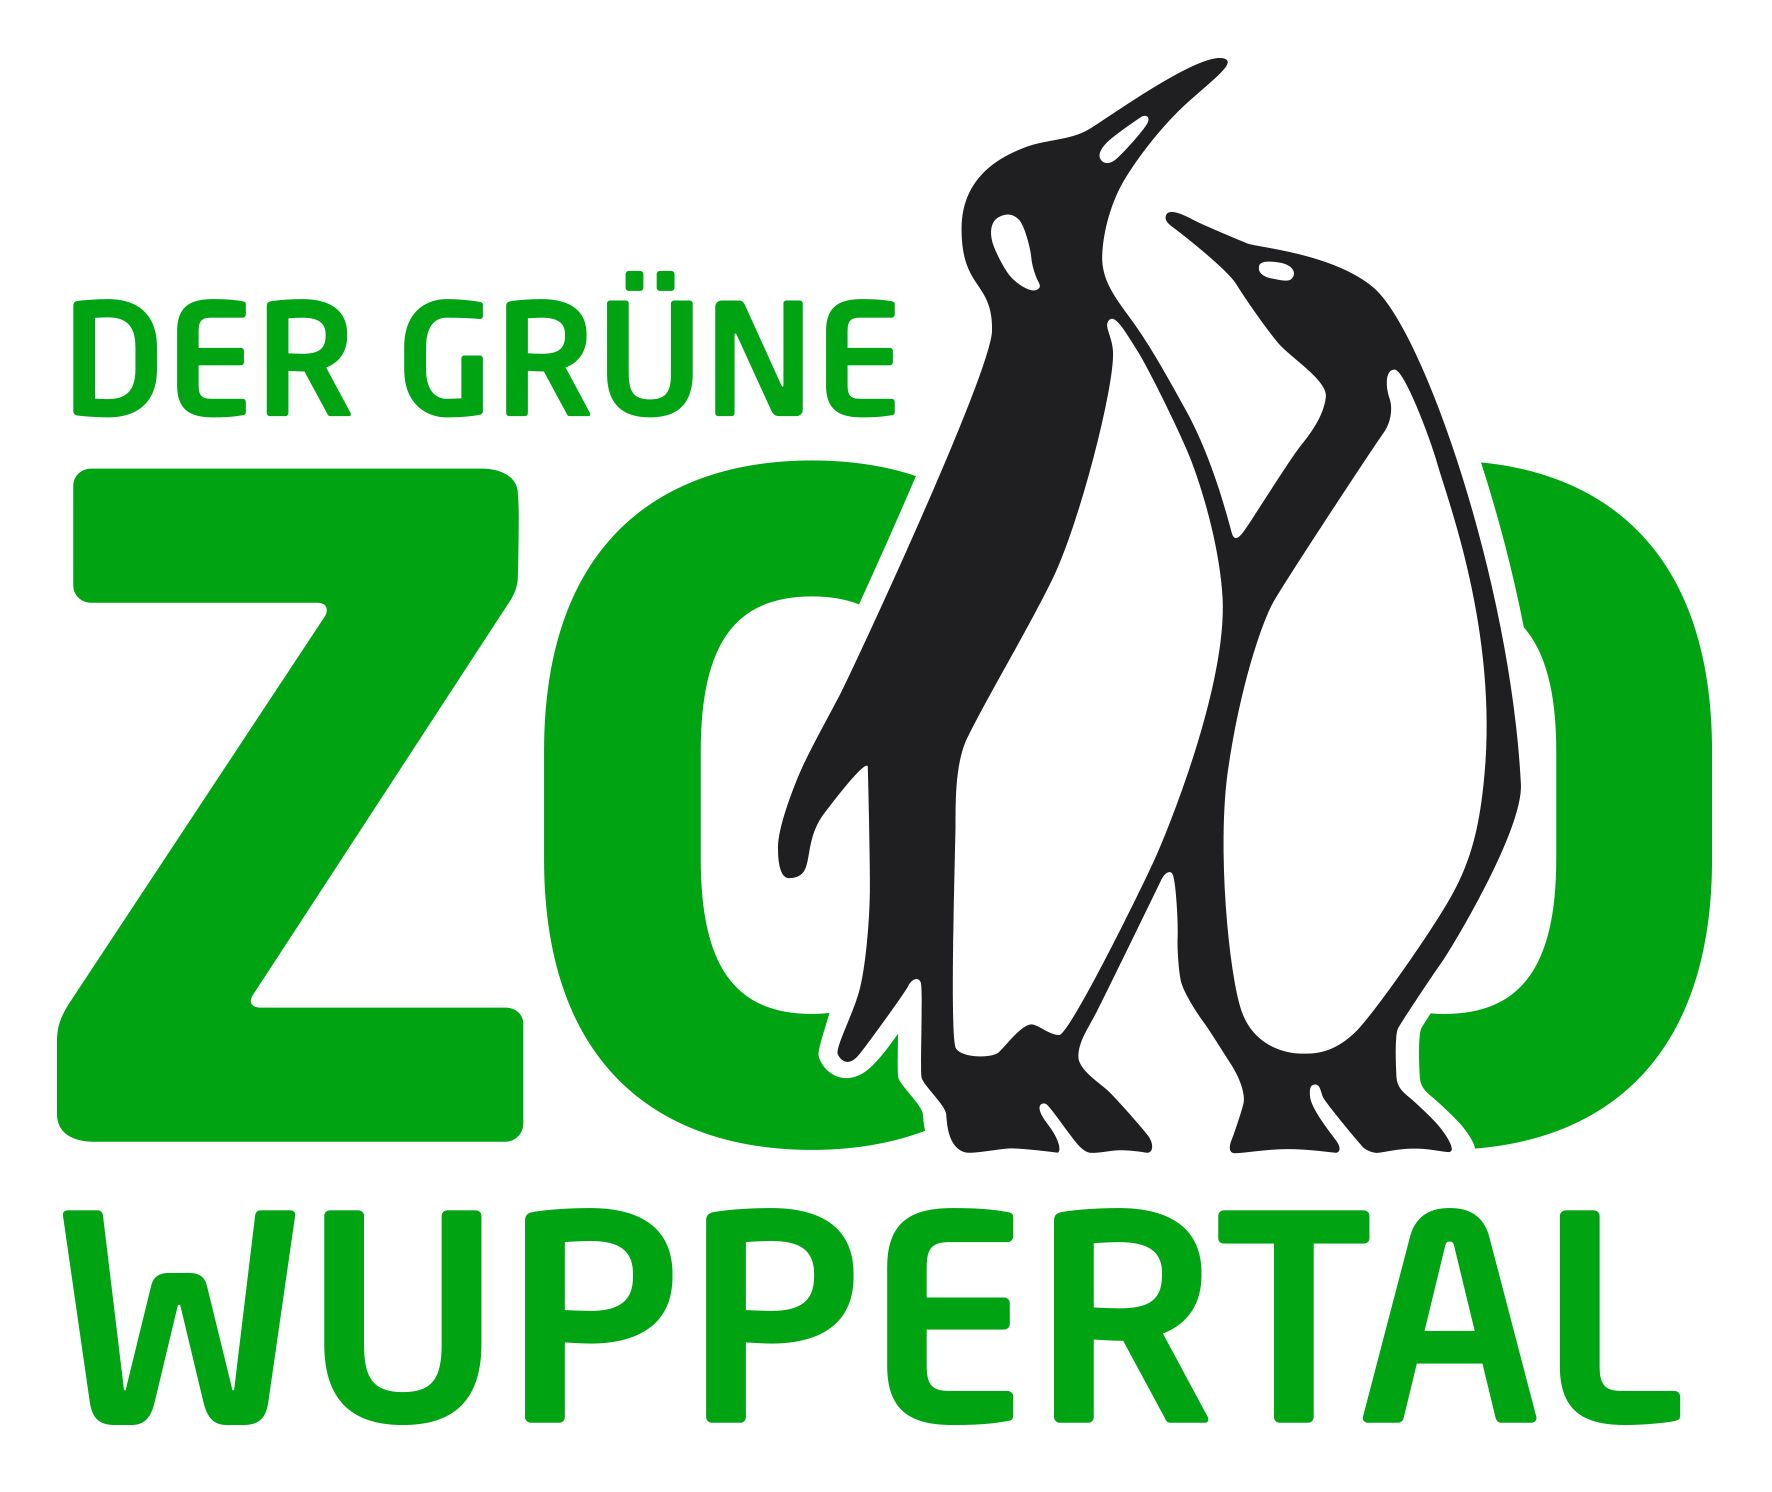 Der Grüne Zoo Wuppertal